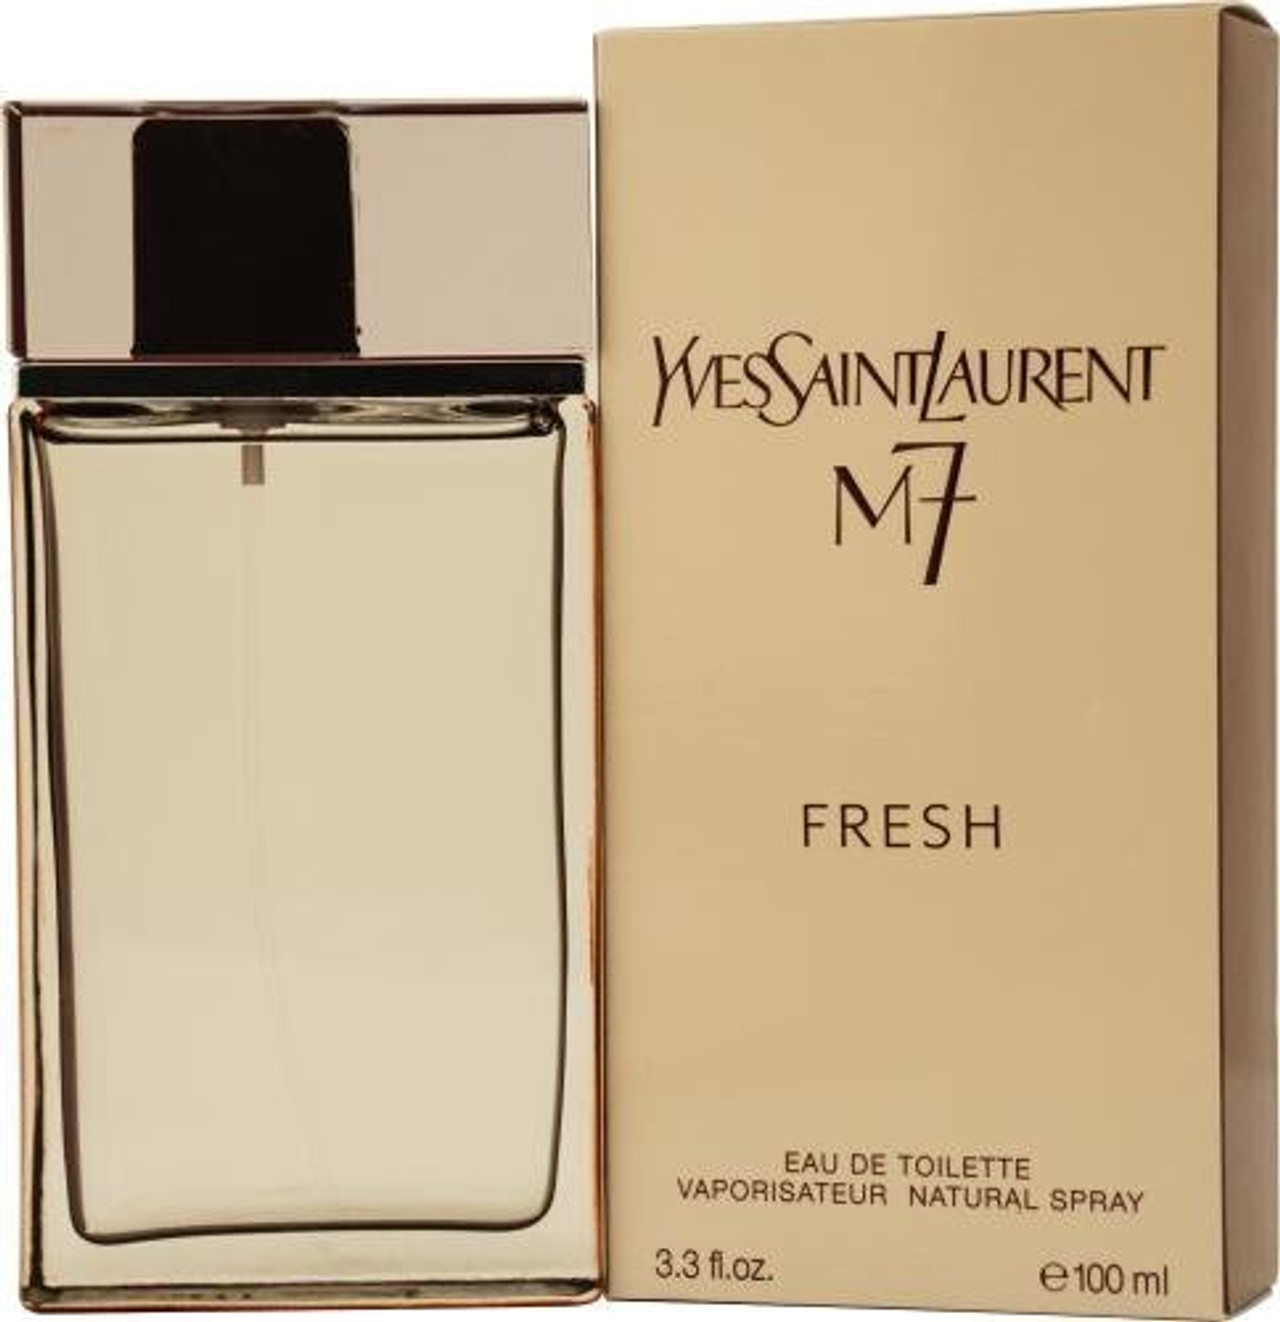 Yves Saint Laurent M7 Fresh 3.3 oz Eau de Toilette - Perfume BFF